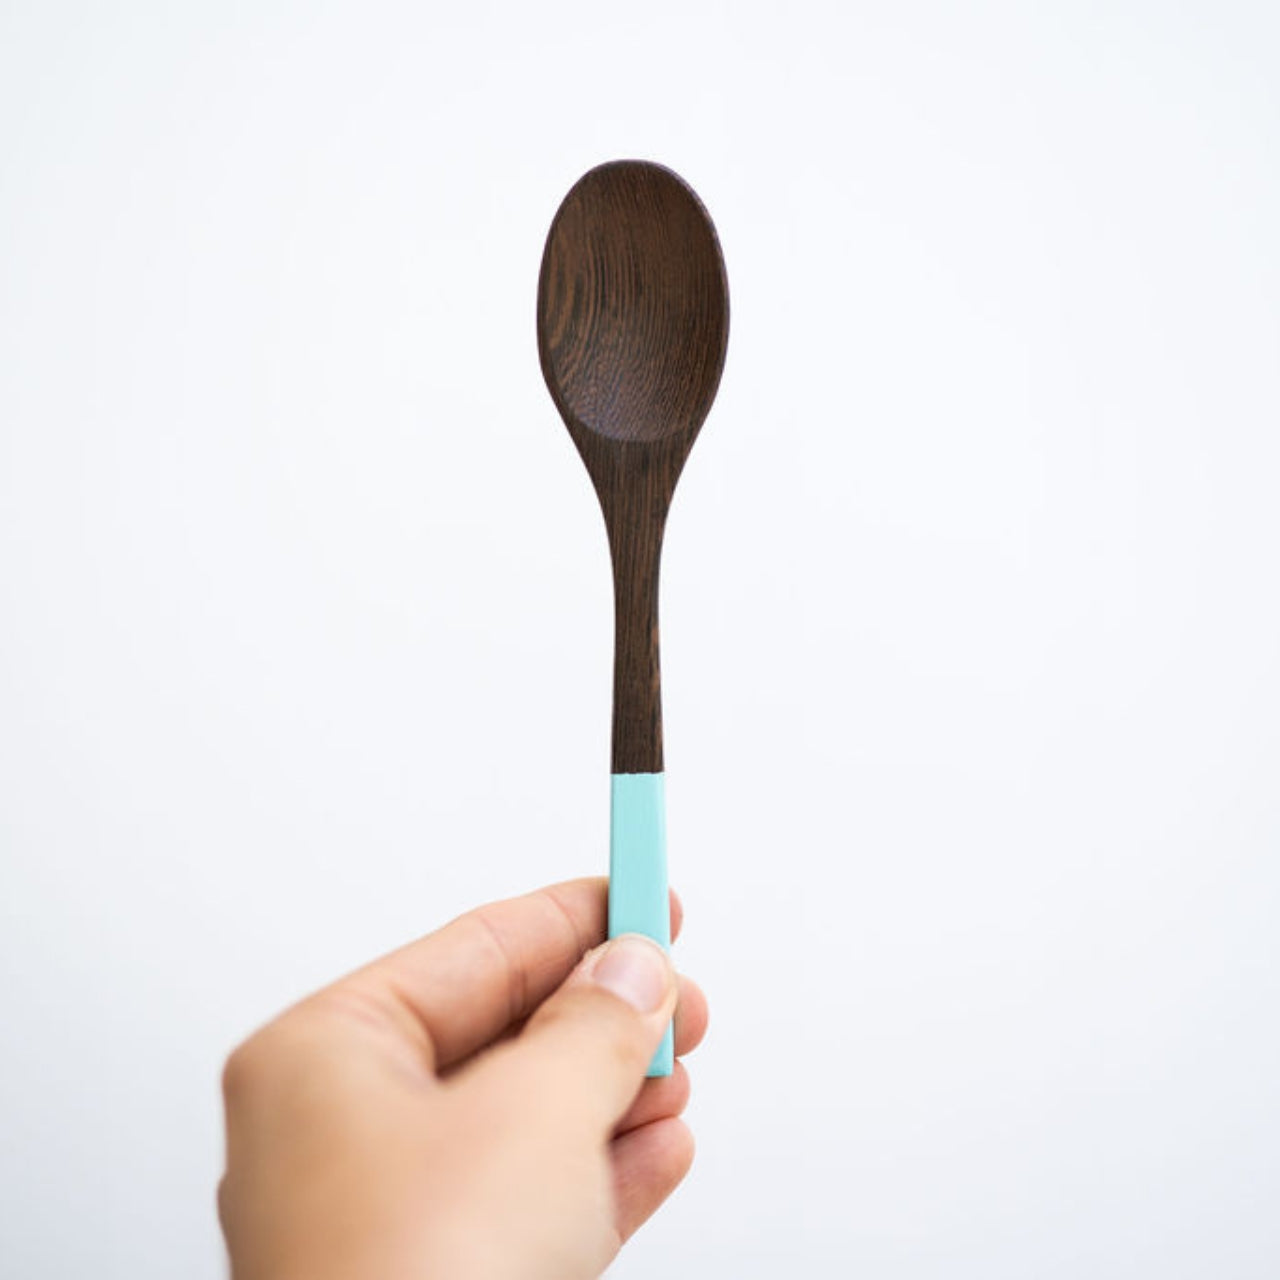 Wooden Splash Spoons